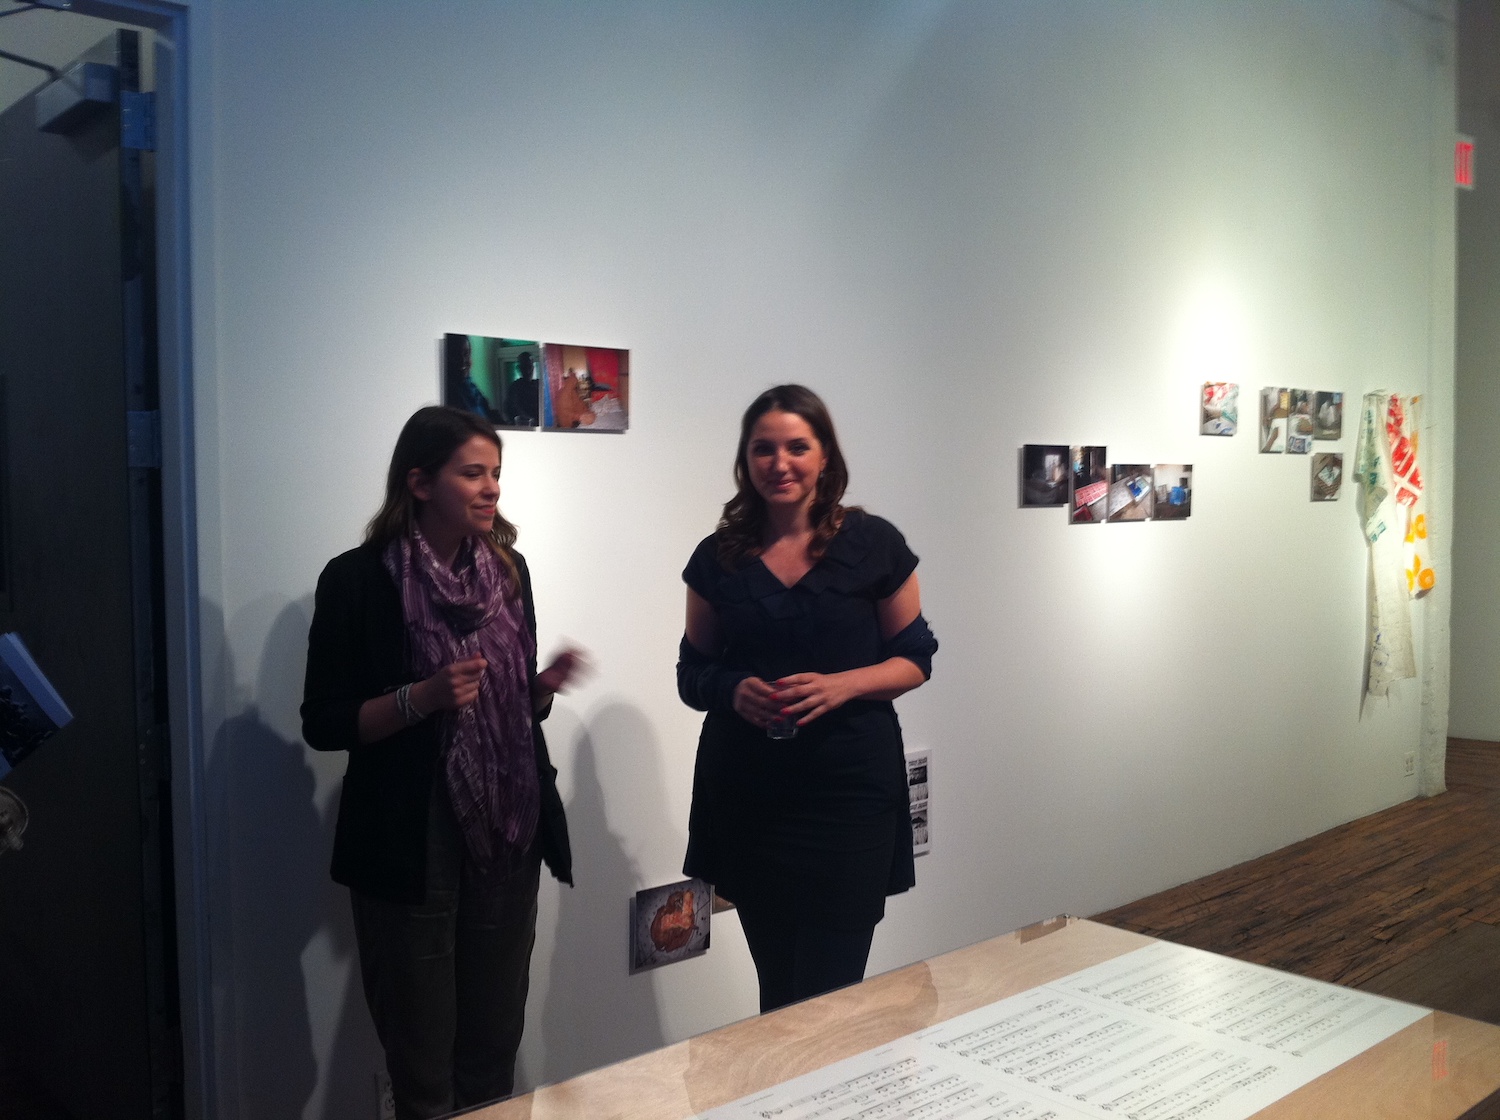 圖五 左為 ISCP 機構策展人Kari Conte, 右為 Maja Ćirić 。Maja Ćirić 在2011年，因為獲得ISCP策展人獎的殊榮，在 ISCP 以「東道主的力量」展覽探討全球當代藝術世界的潛力。